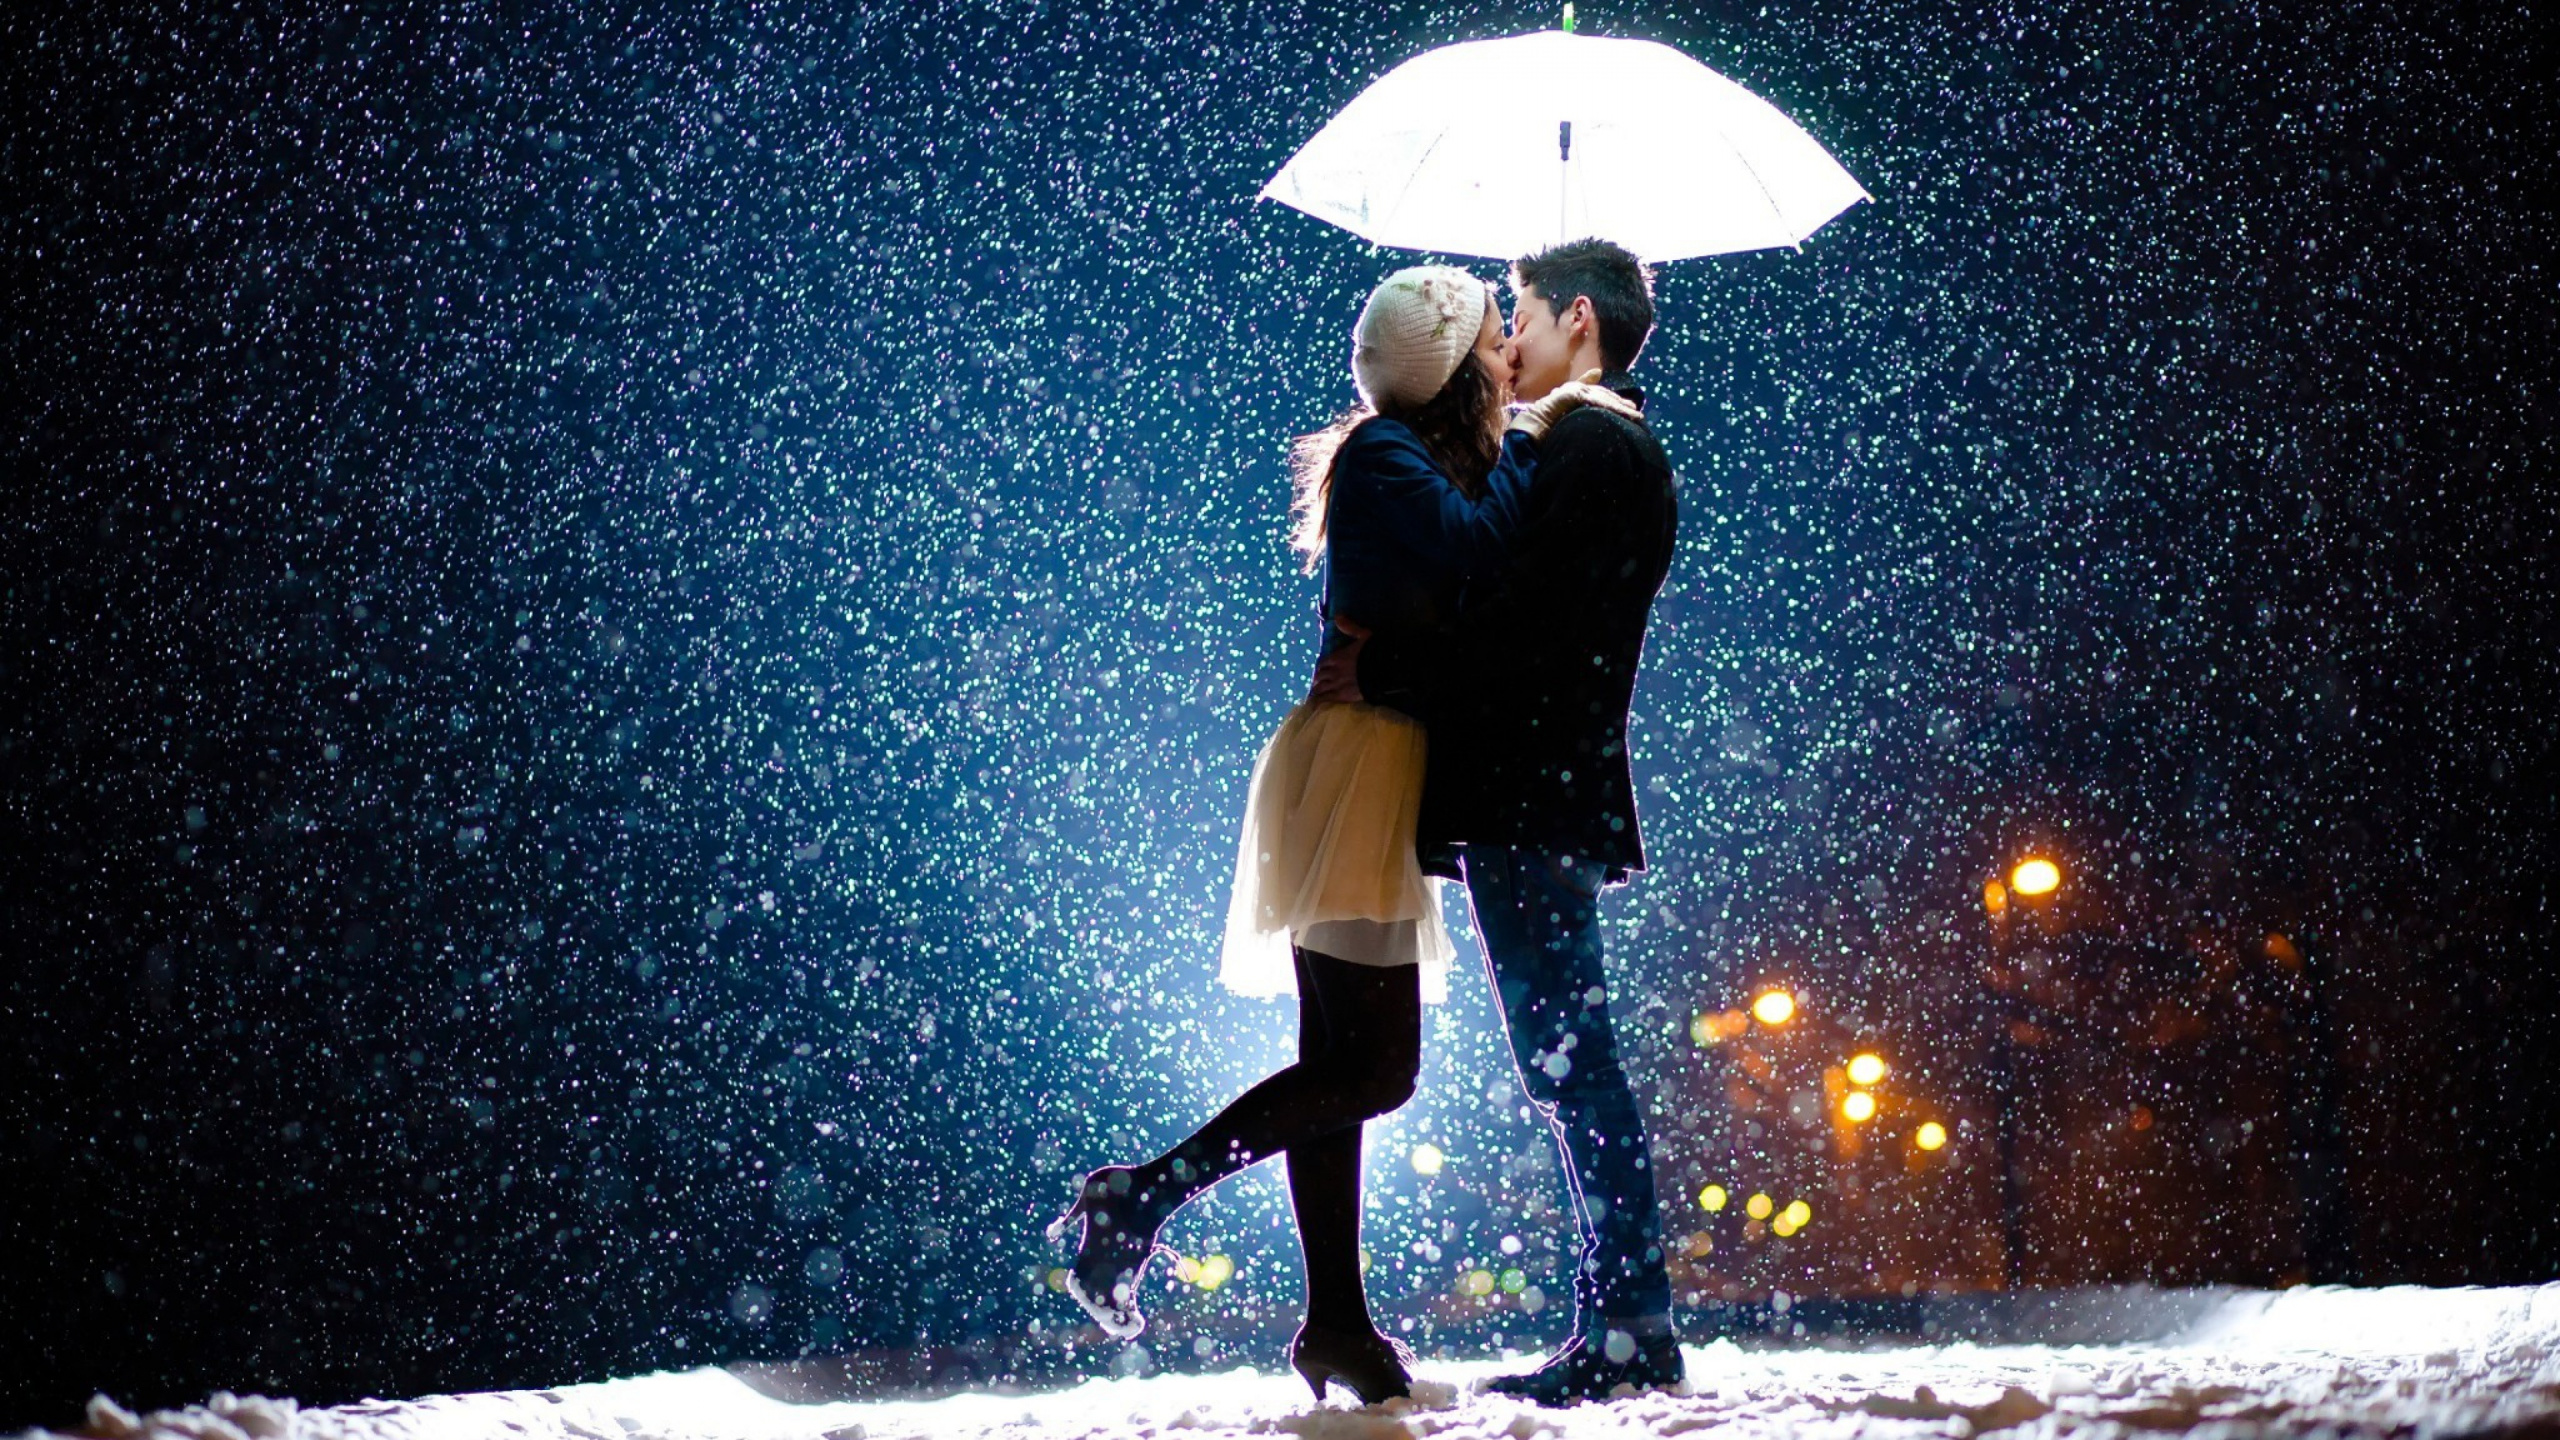 Romantik, Kuss, Ehepaar, Regenschirm, Schnee. Wallpaper in 2560x1440 Resolution